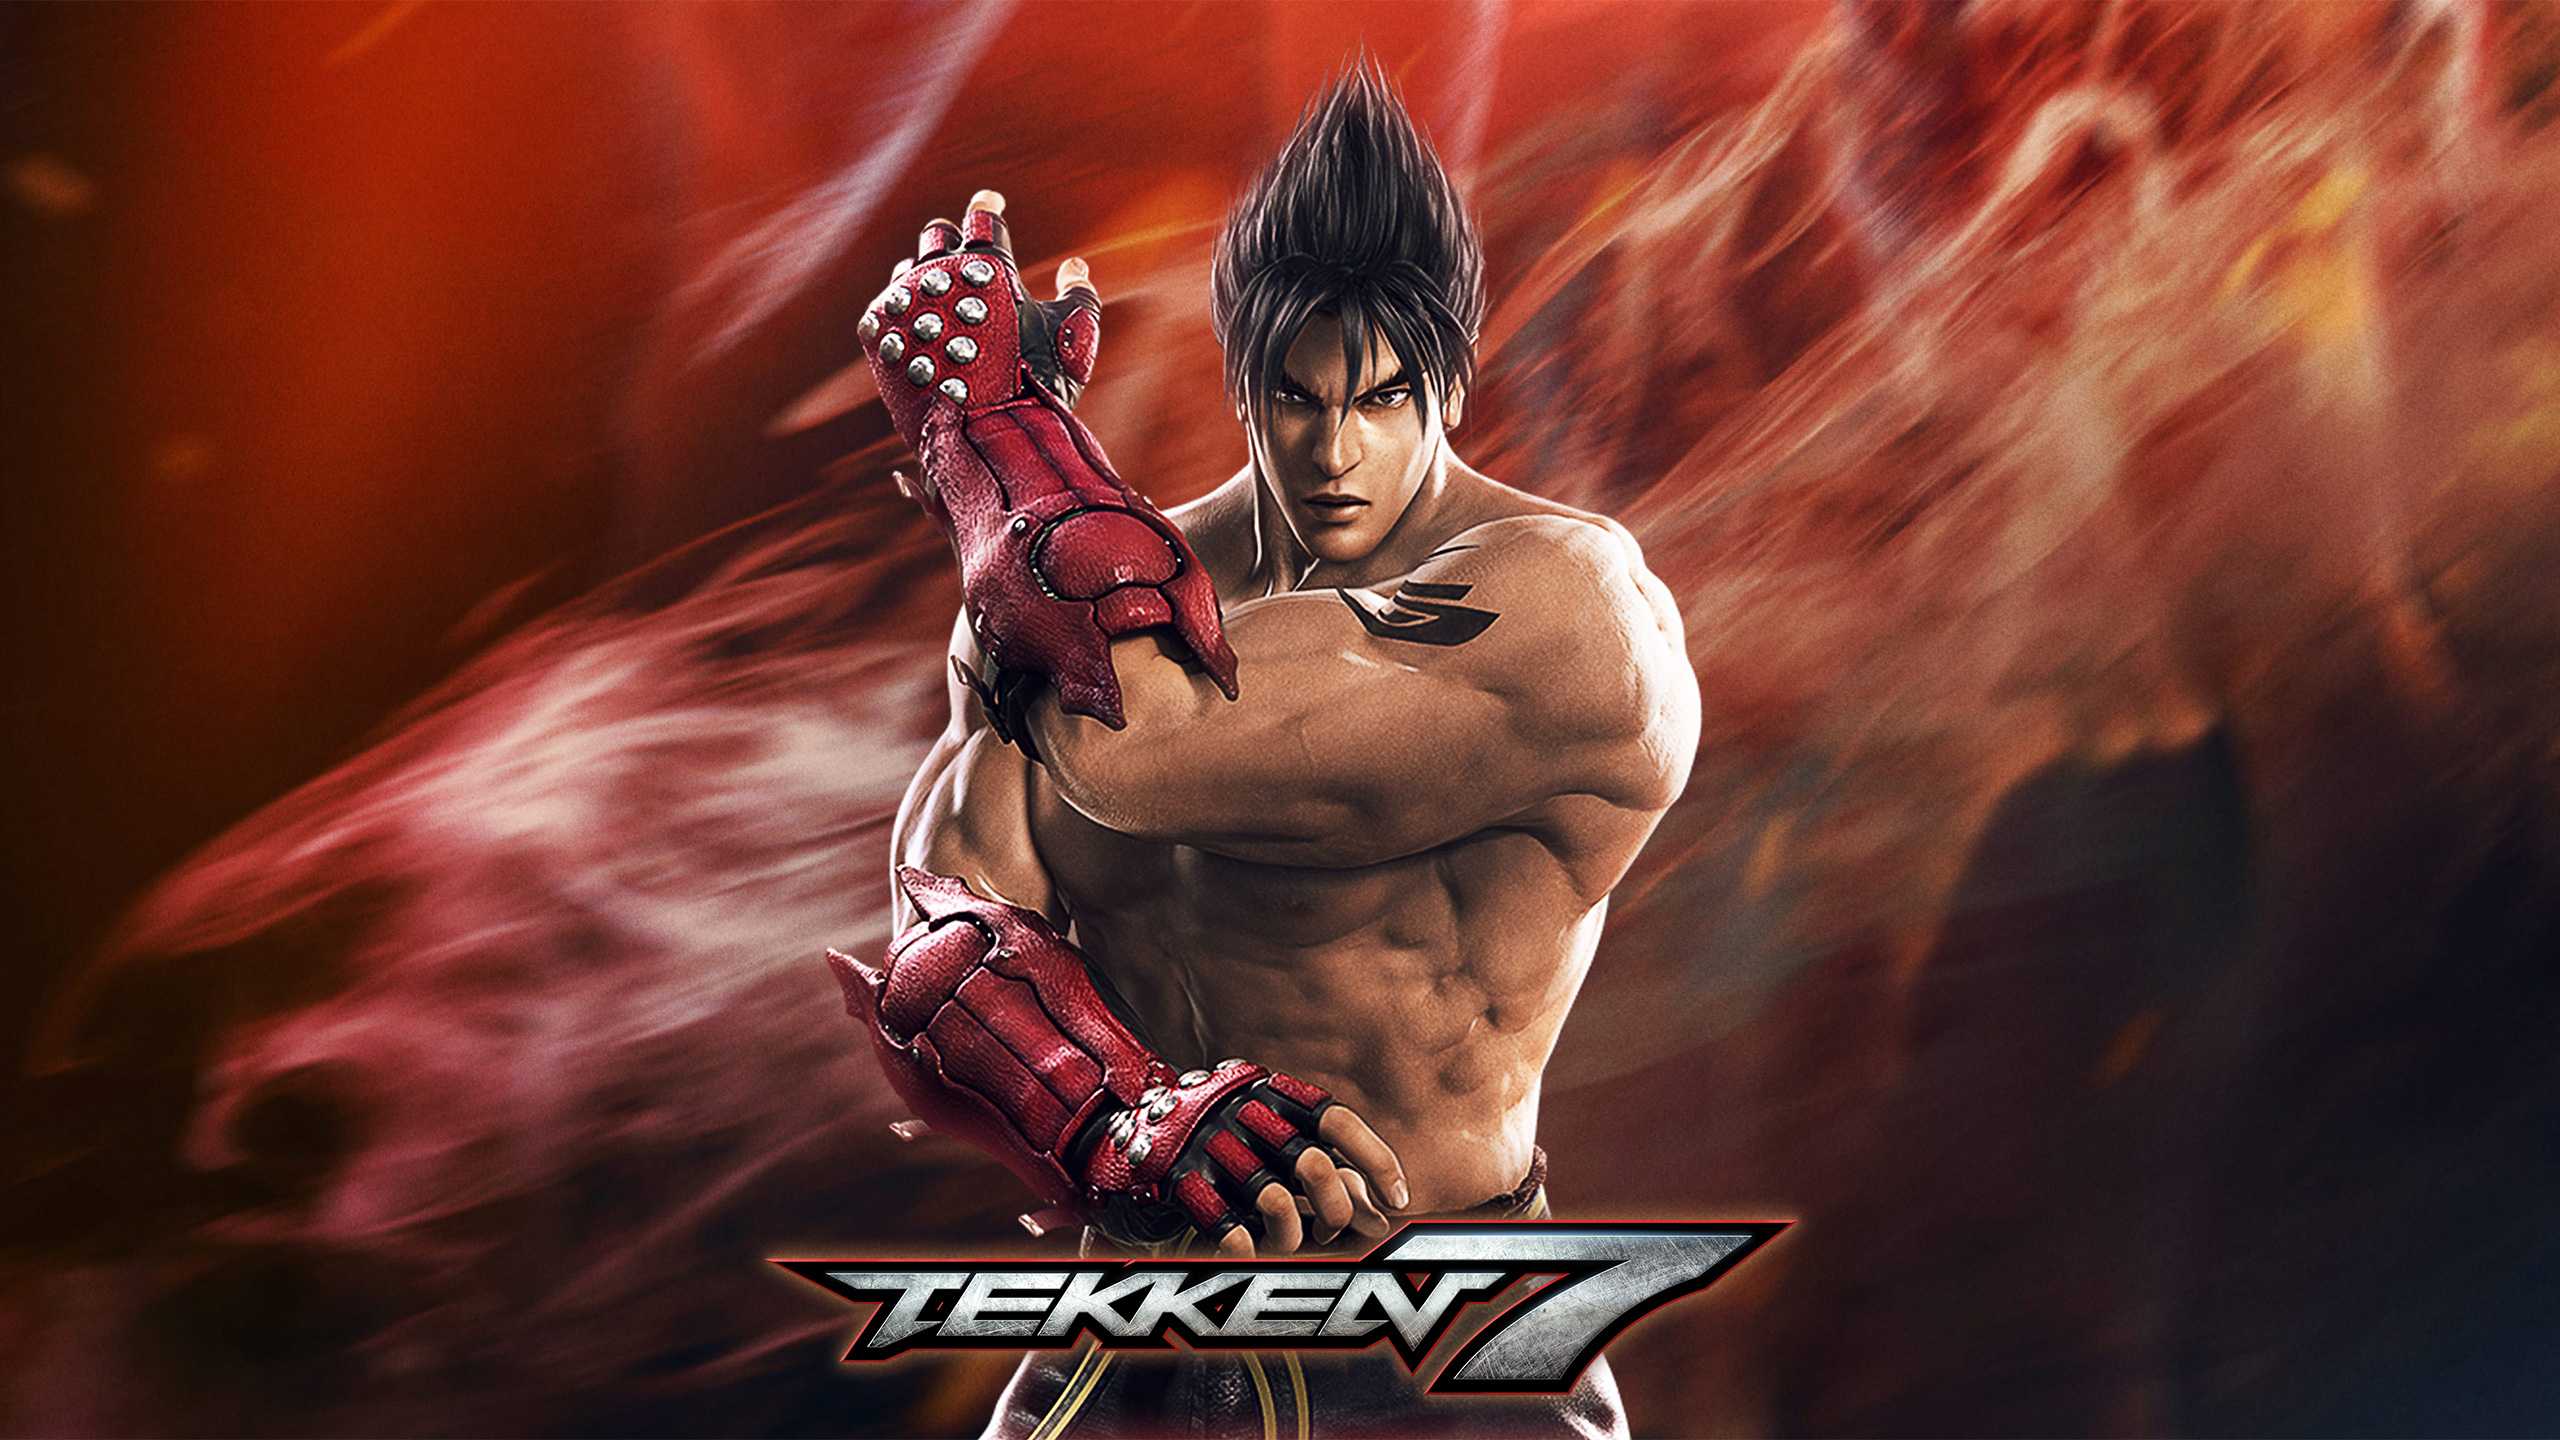 Tekken 7 HD Wallpapers - Wallpaper Cave